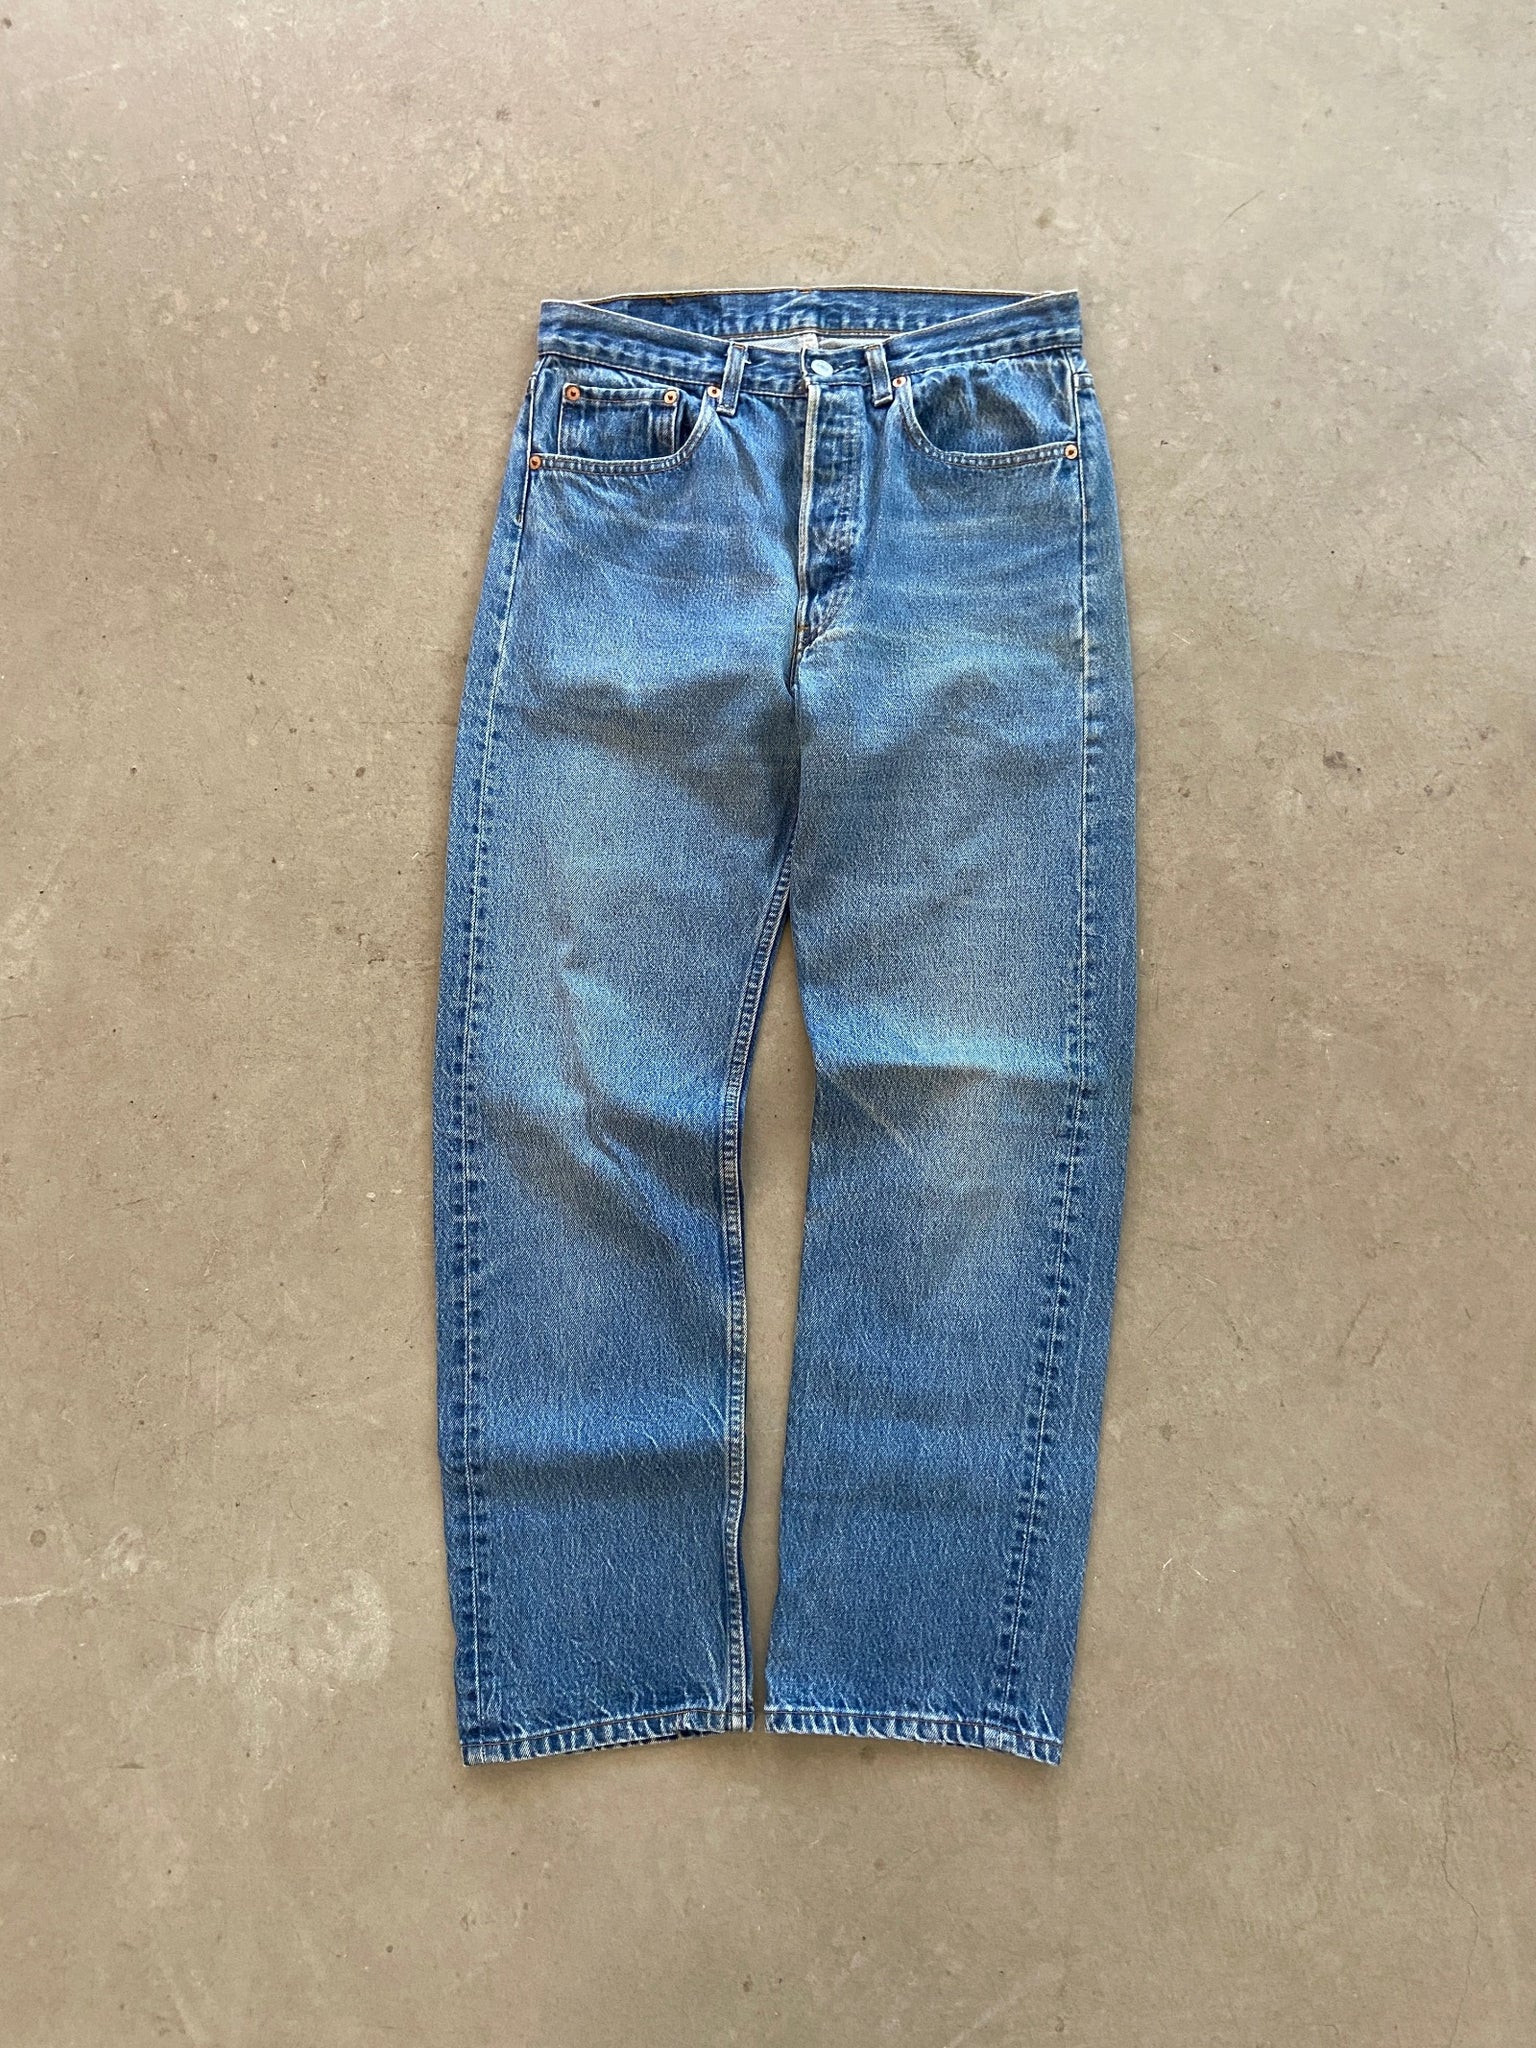 1990's Levis 501xx Jeans - 32 x 33